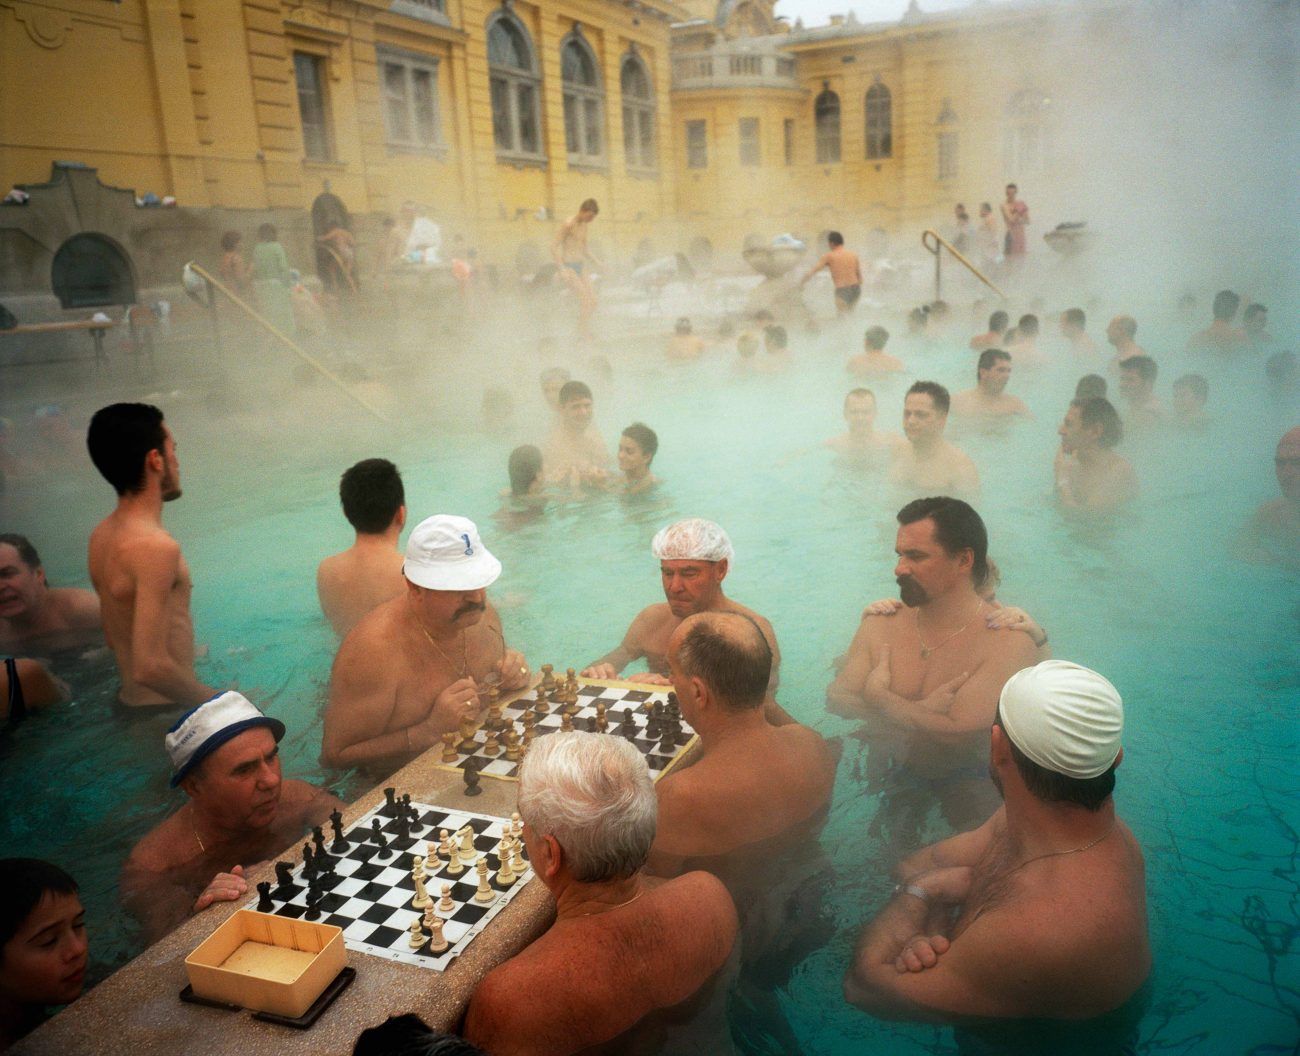 1300x1056, 185 Kb / Венгрия, Будапешт, термальный источник, купальня, люди, шахматы, здание